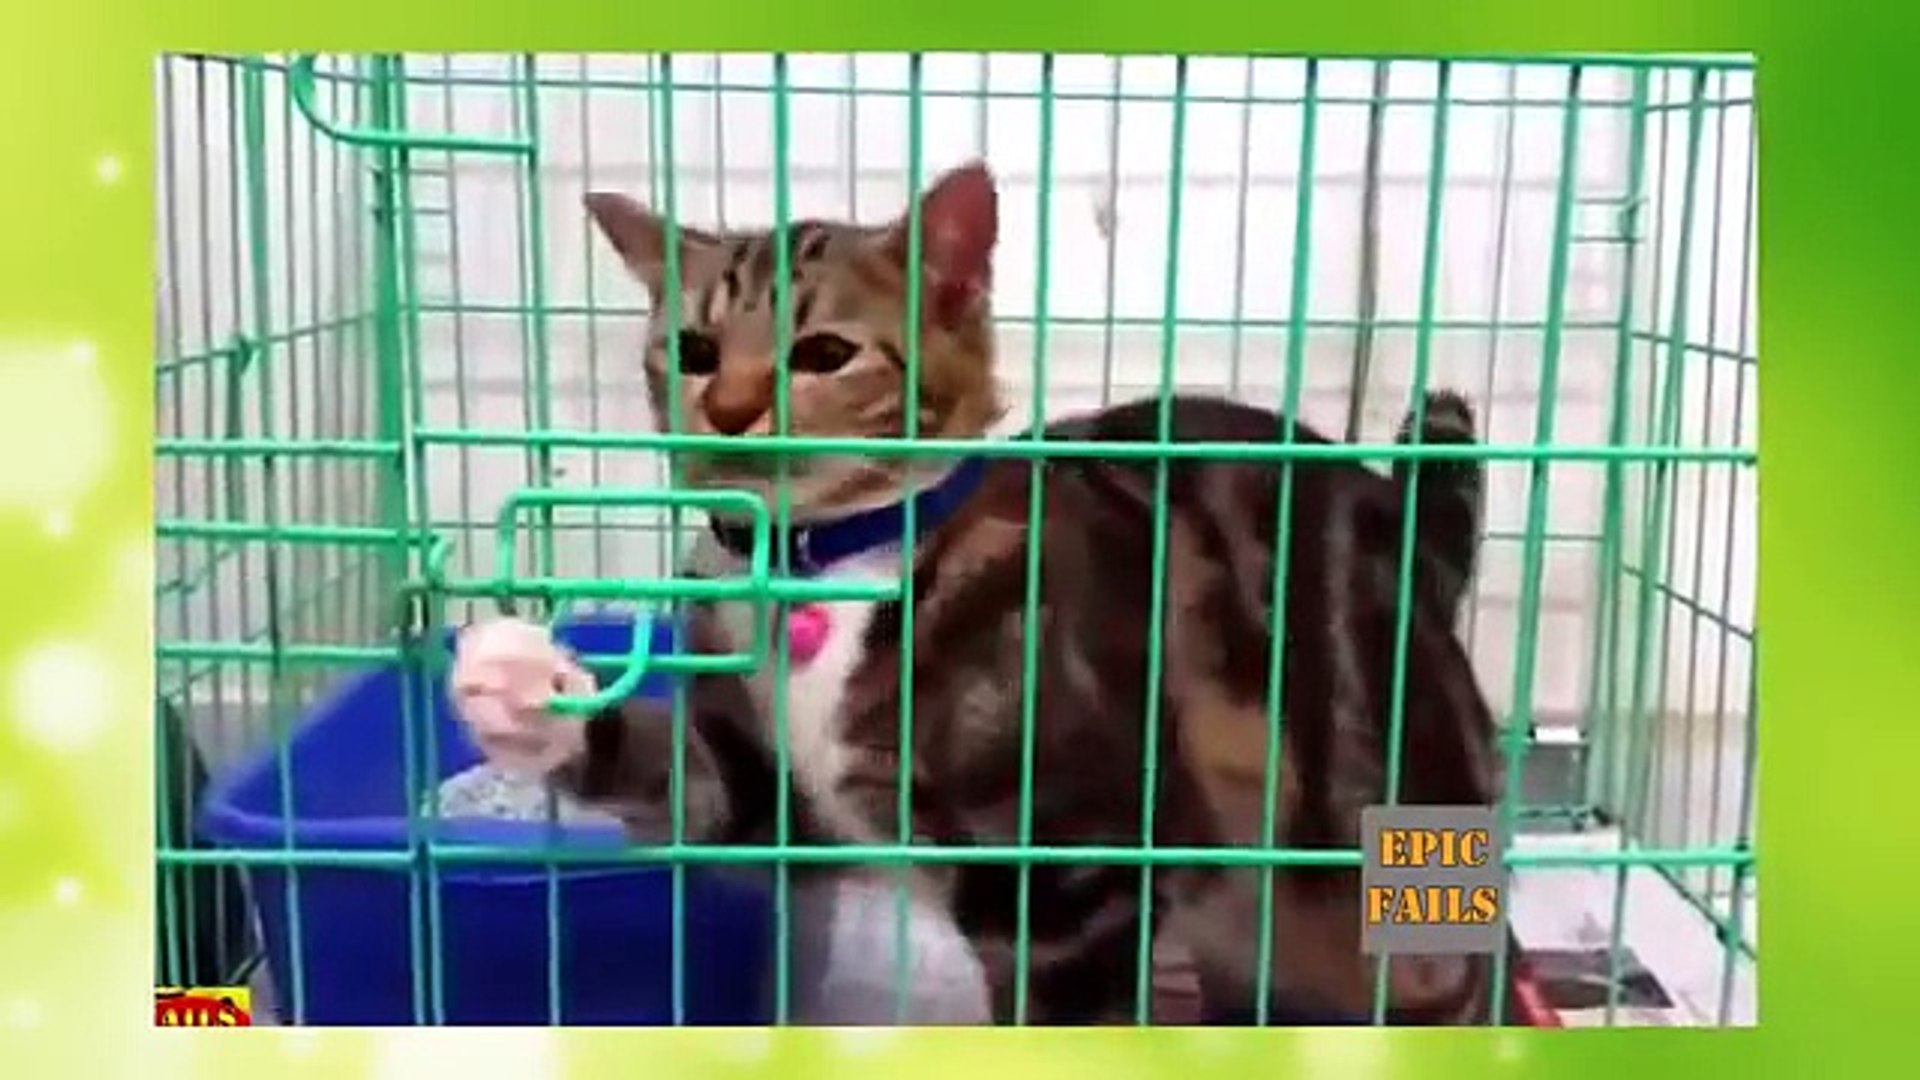 Komik Kedi Videolari Gulmekten Aglayacaksiniz Dailymotion Video